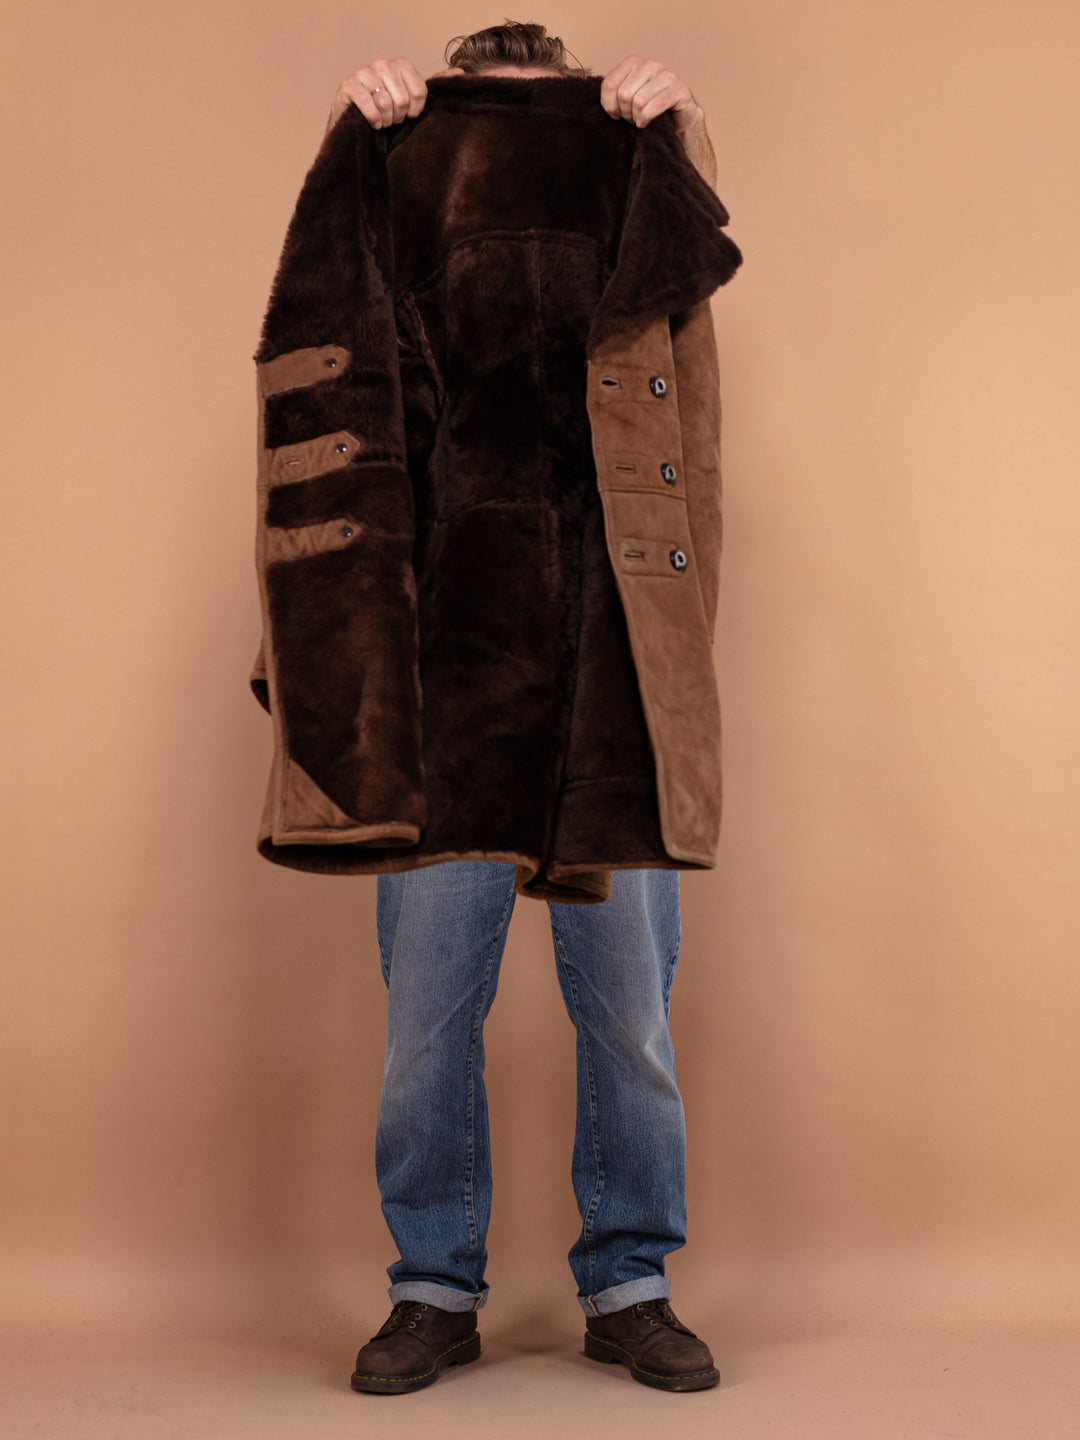 Men Shearling Coat 70's, Size Medium, Worn In Vintage Shearling Coat, Retro Suede Coat, Brown Suede Overcoat, Boho Winter Coat, Pre Loved